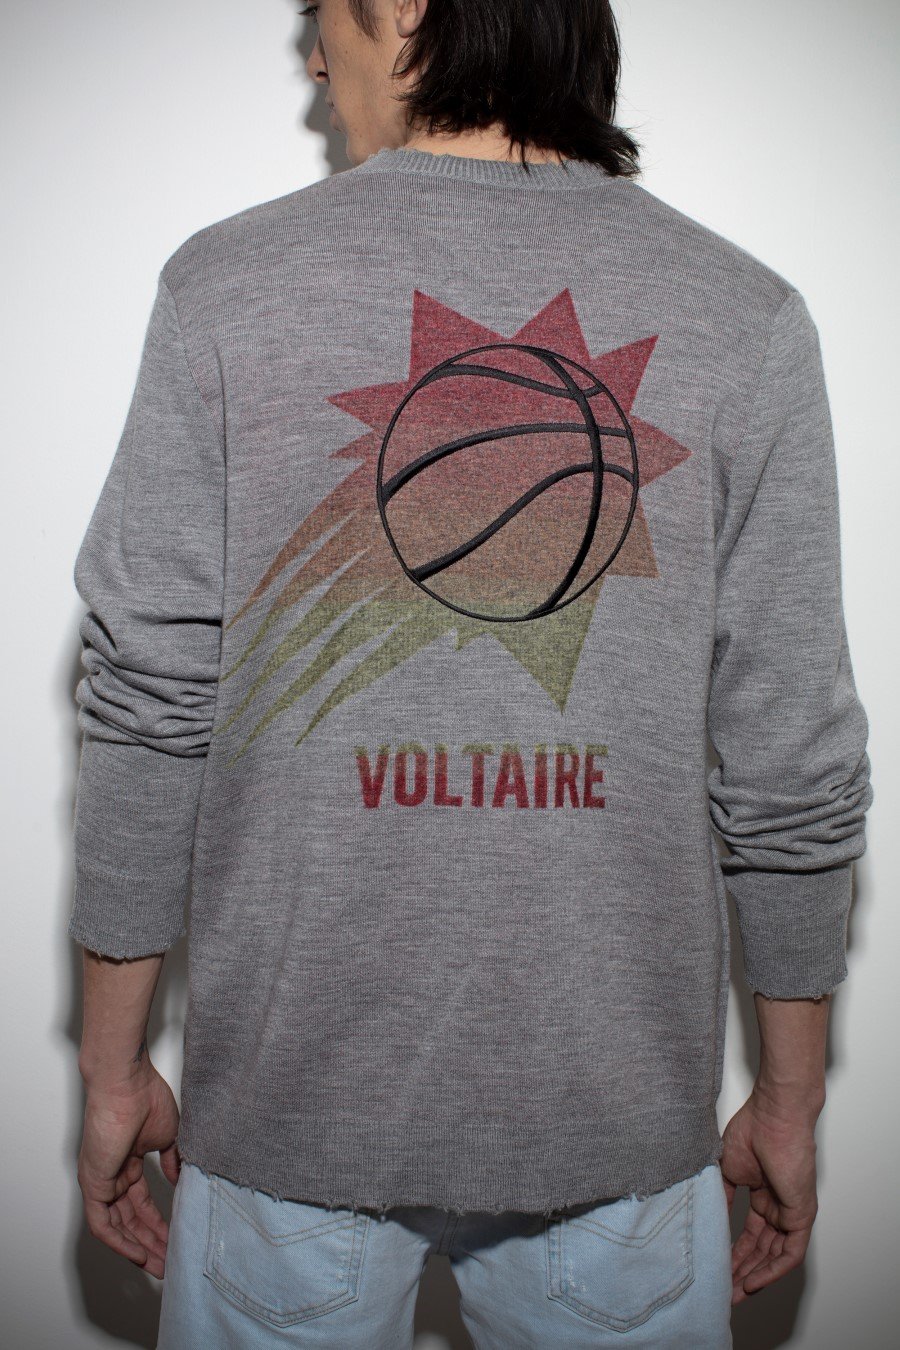 Zadig & Voltaire x NBA